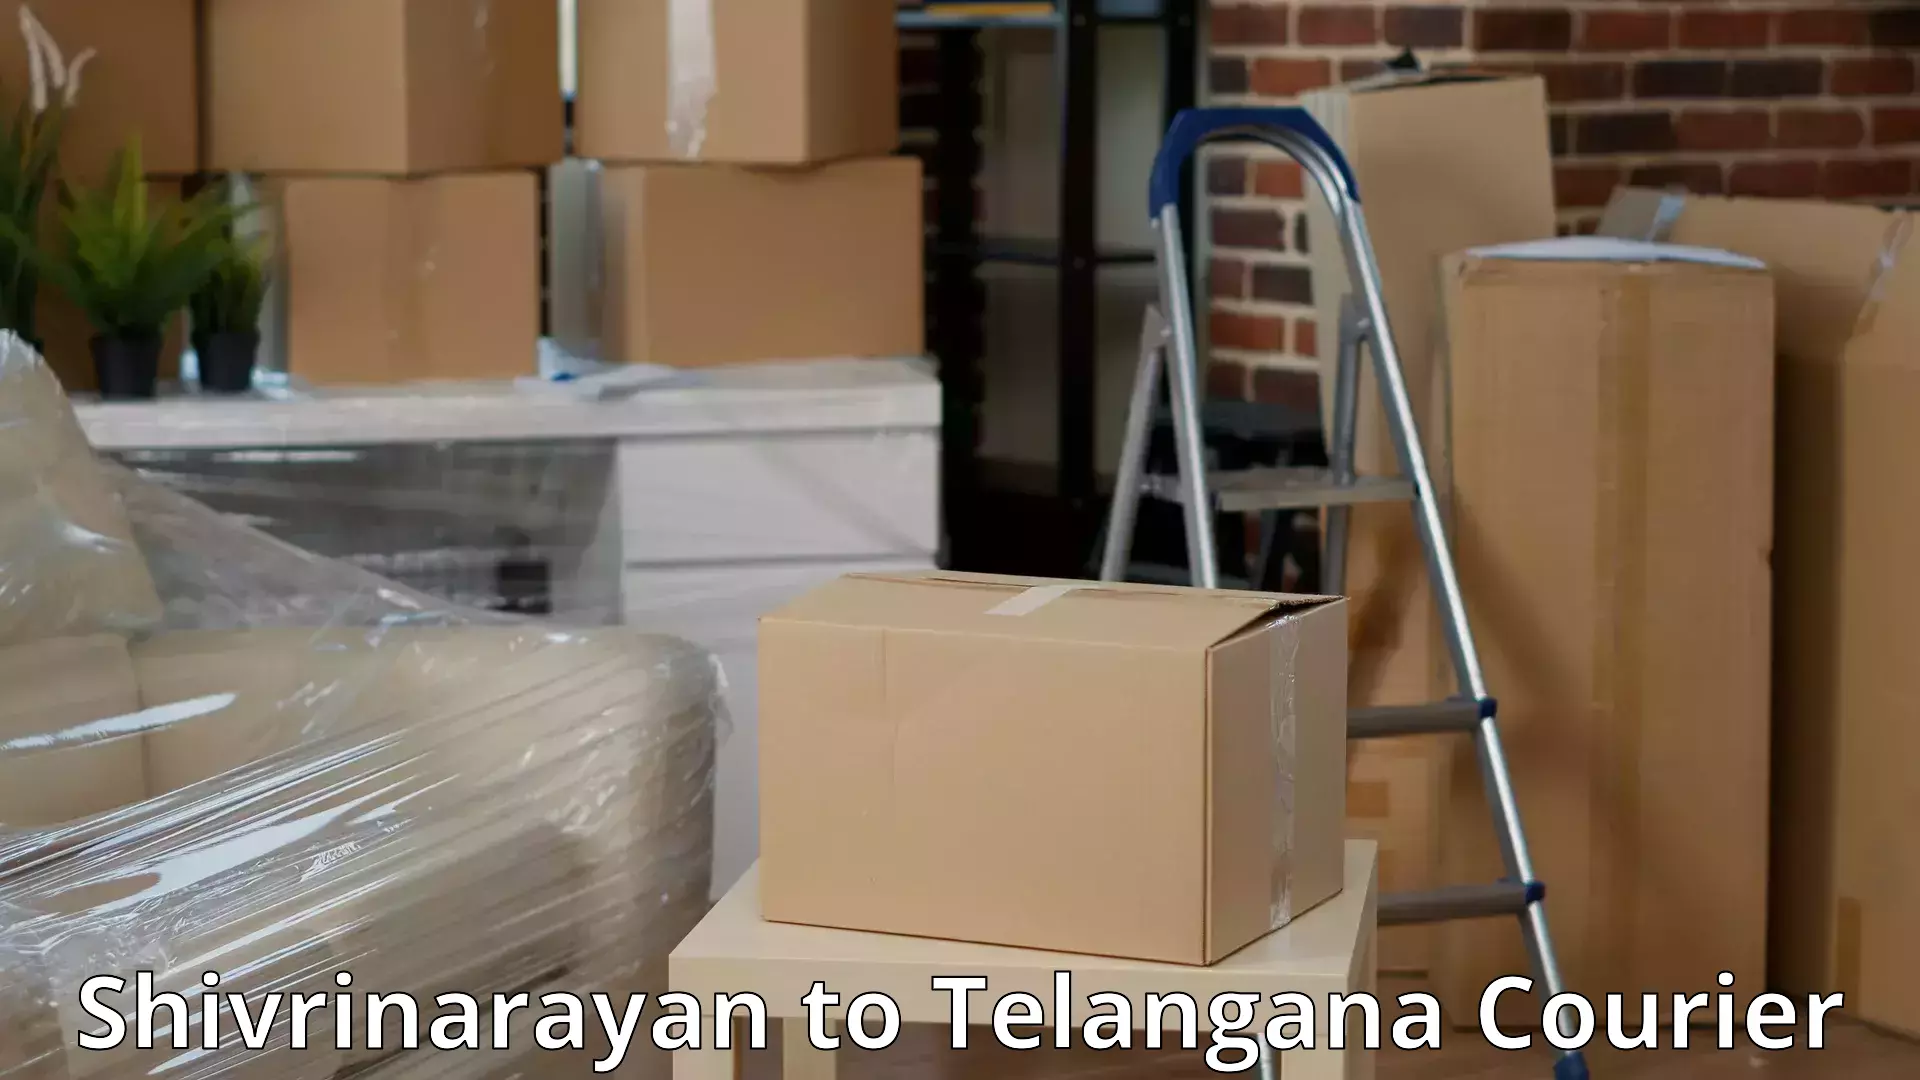 Furniture delivery service Shivrinarayan to Chennur